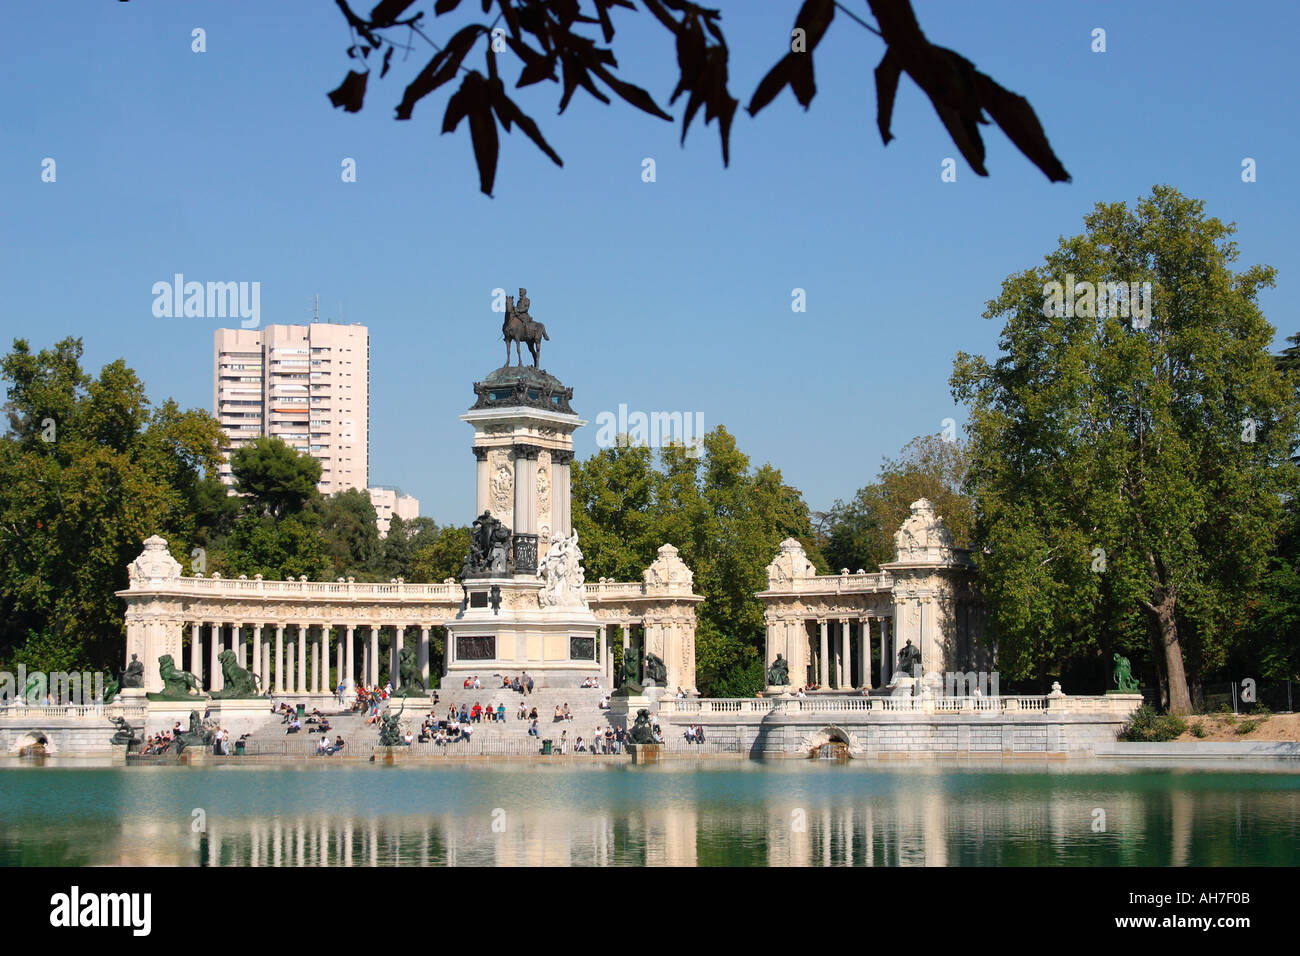 Madrid, Spagna. il Parque del Retiro o il parco del Retiro. Monumento a Alfonso XII si vede attraverso el estanque o lo stagno o lago. Foto Stock